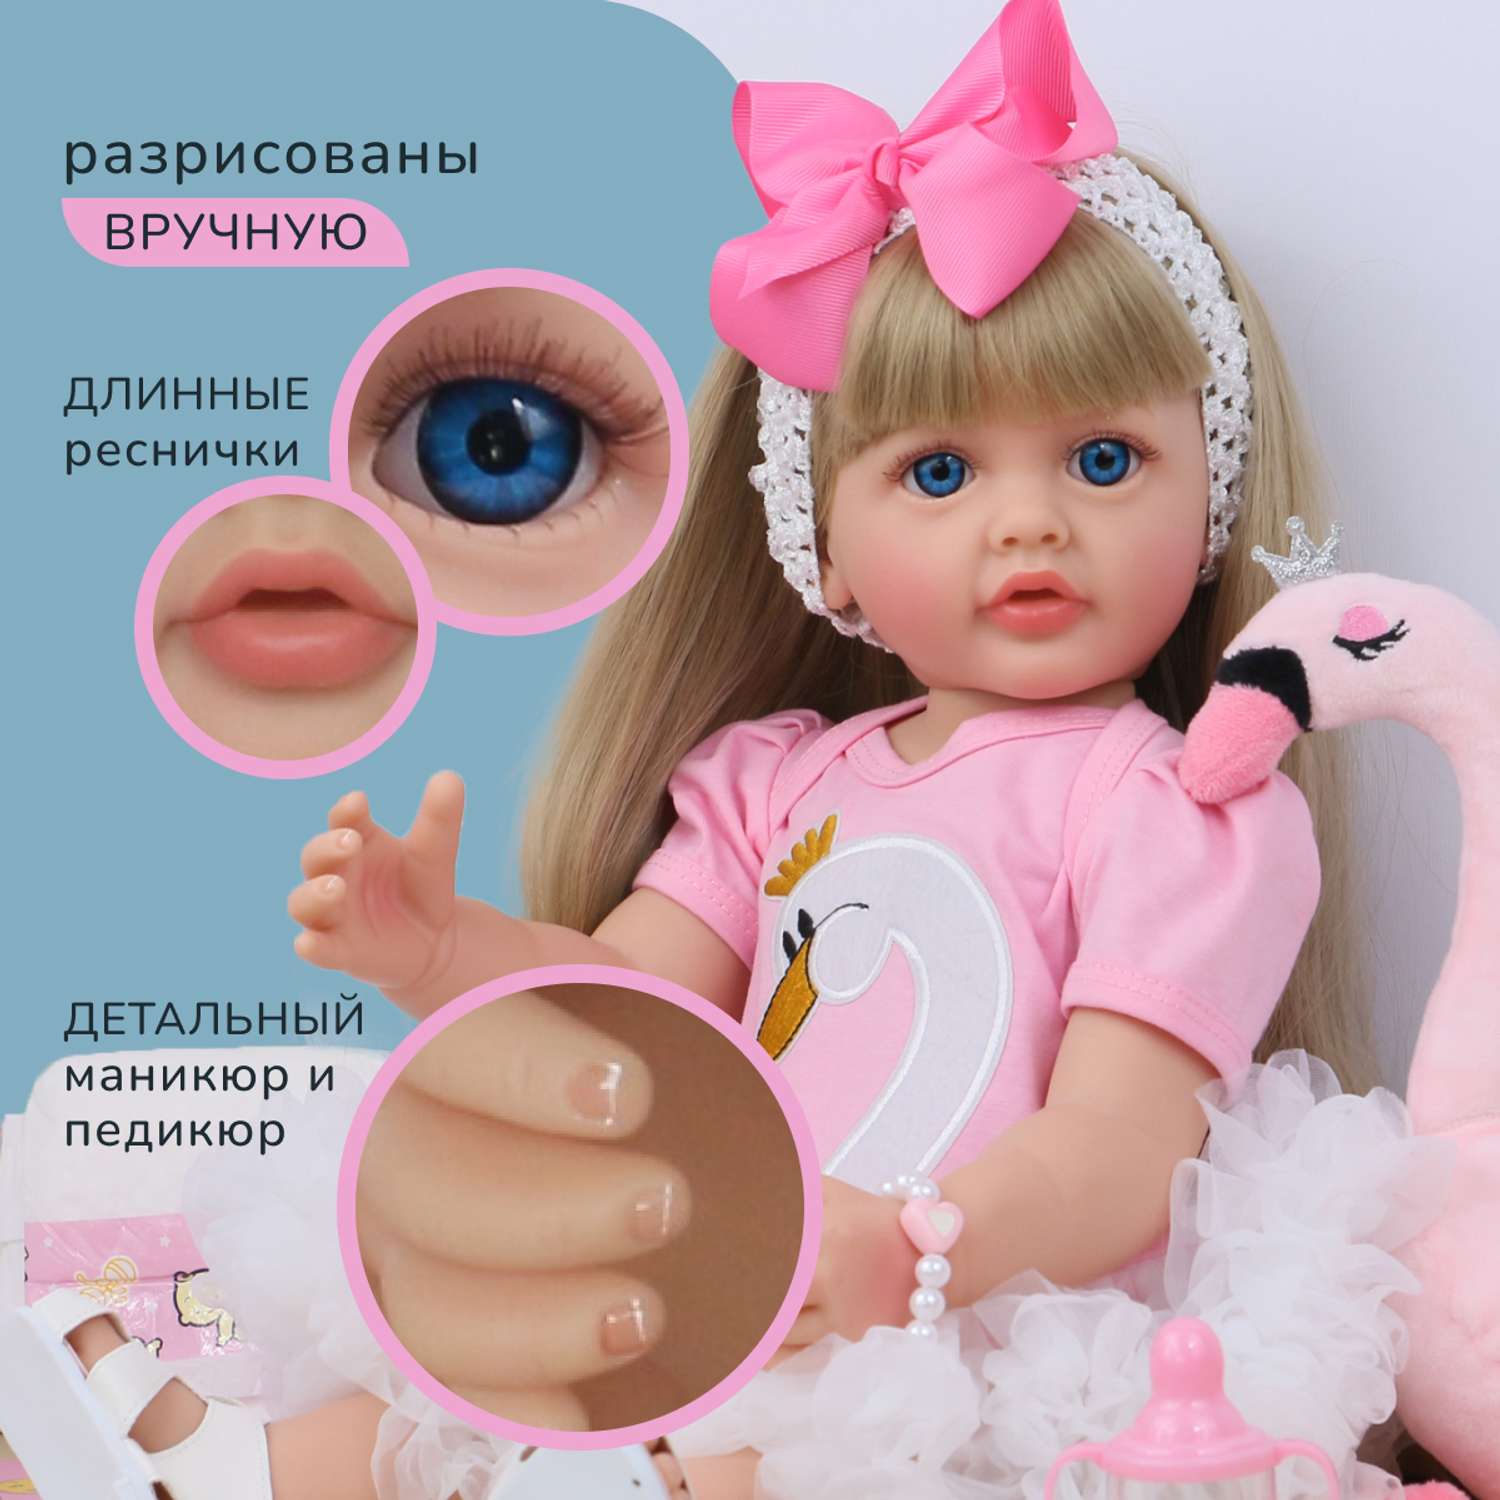 Кукла Реборн QA BABY Валерия девочка большая пупс набор игрушки для девочки 55 см 5513 - фото 4